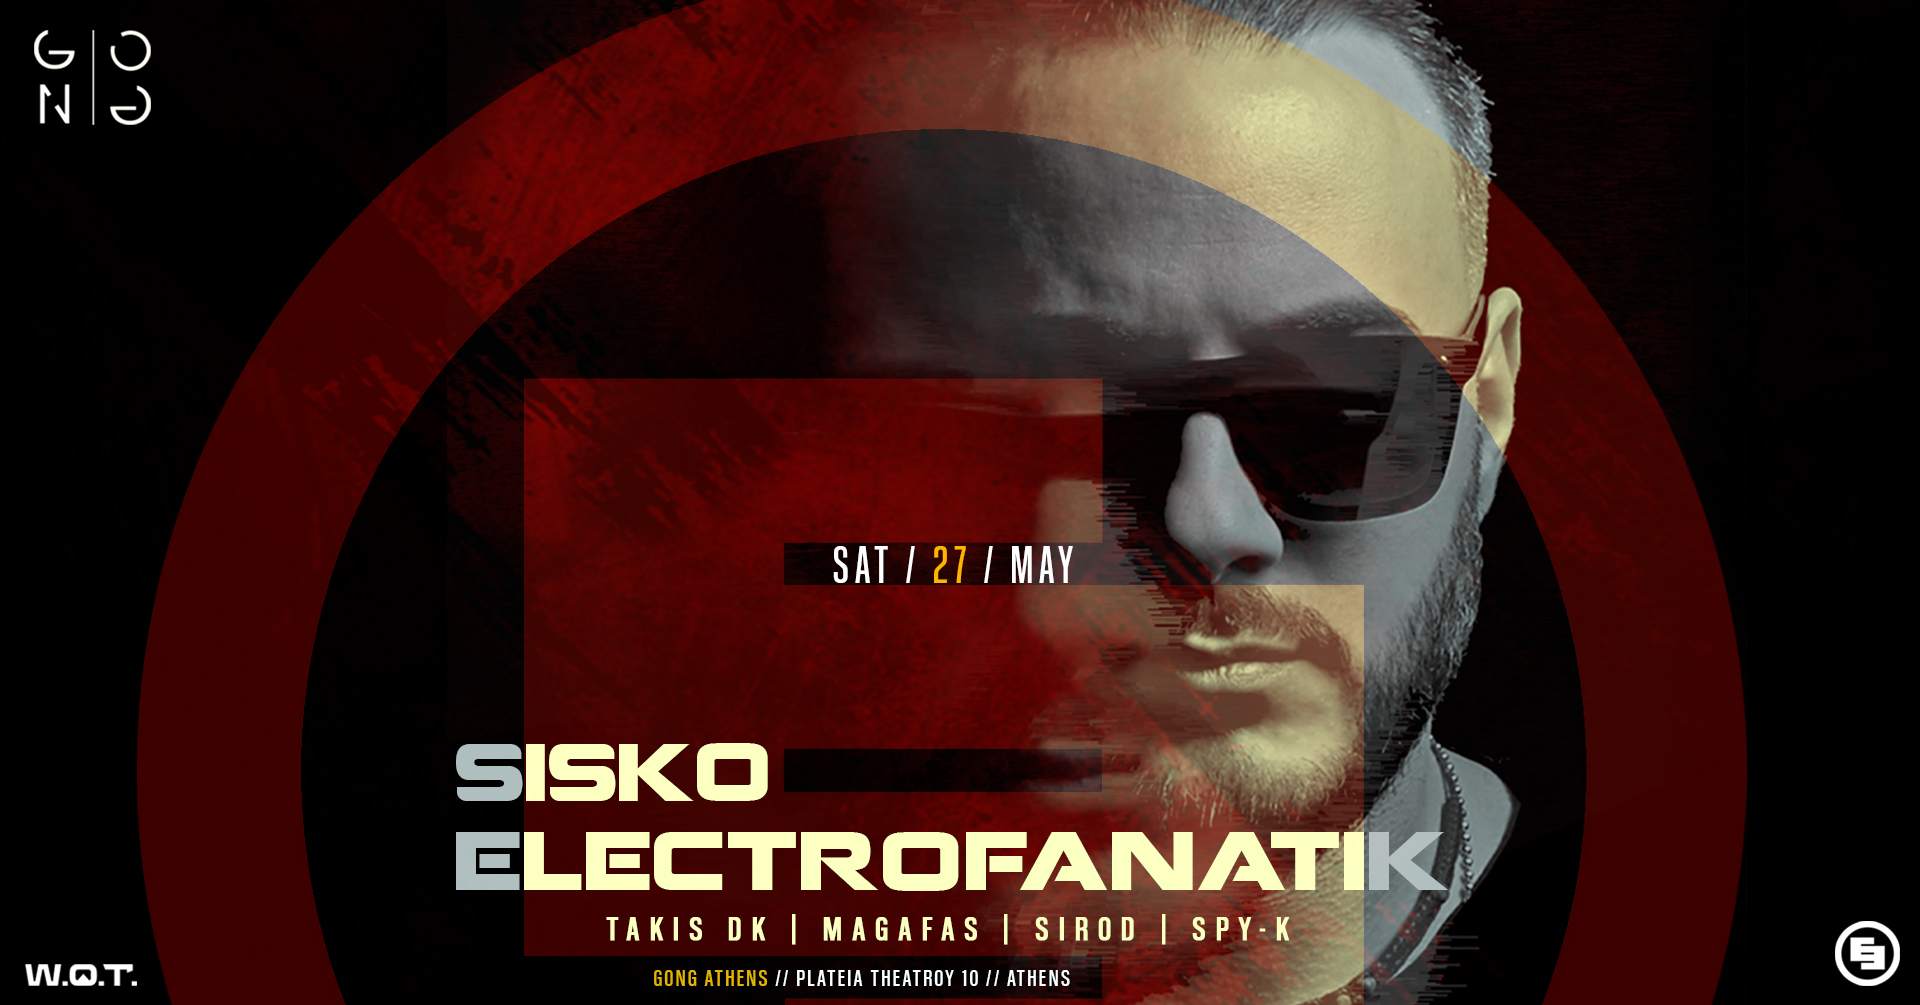 Sisko Electrofanatik - 27th of May at Gong Athens - フライヤー裏